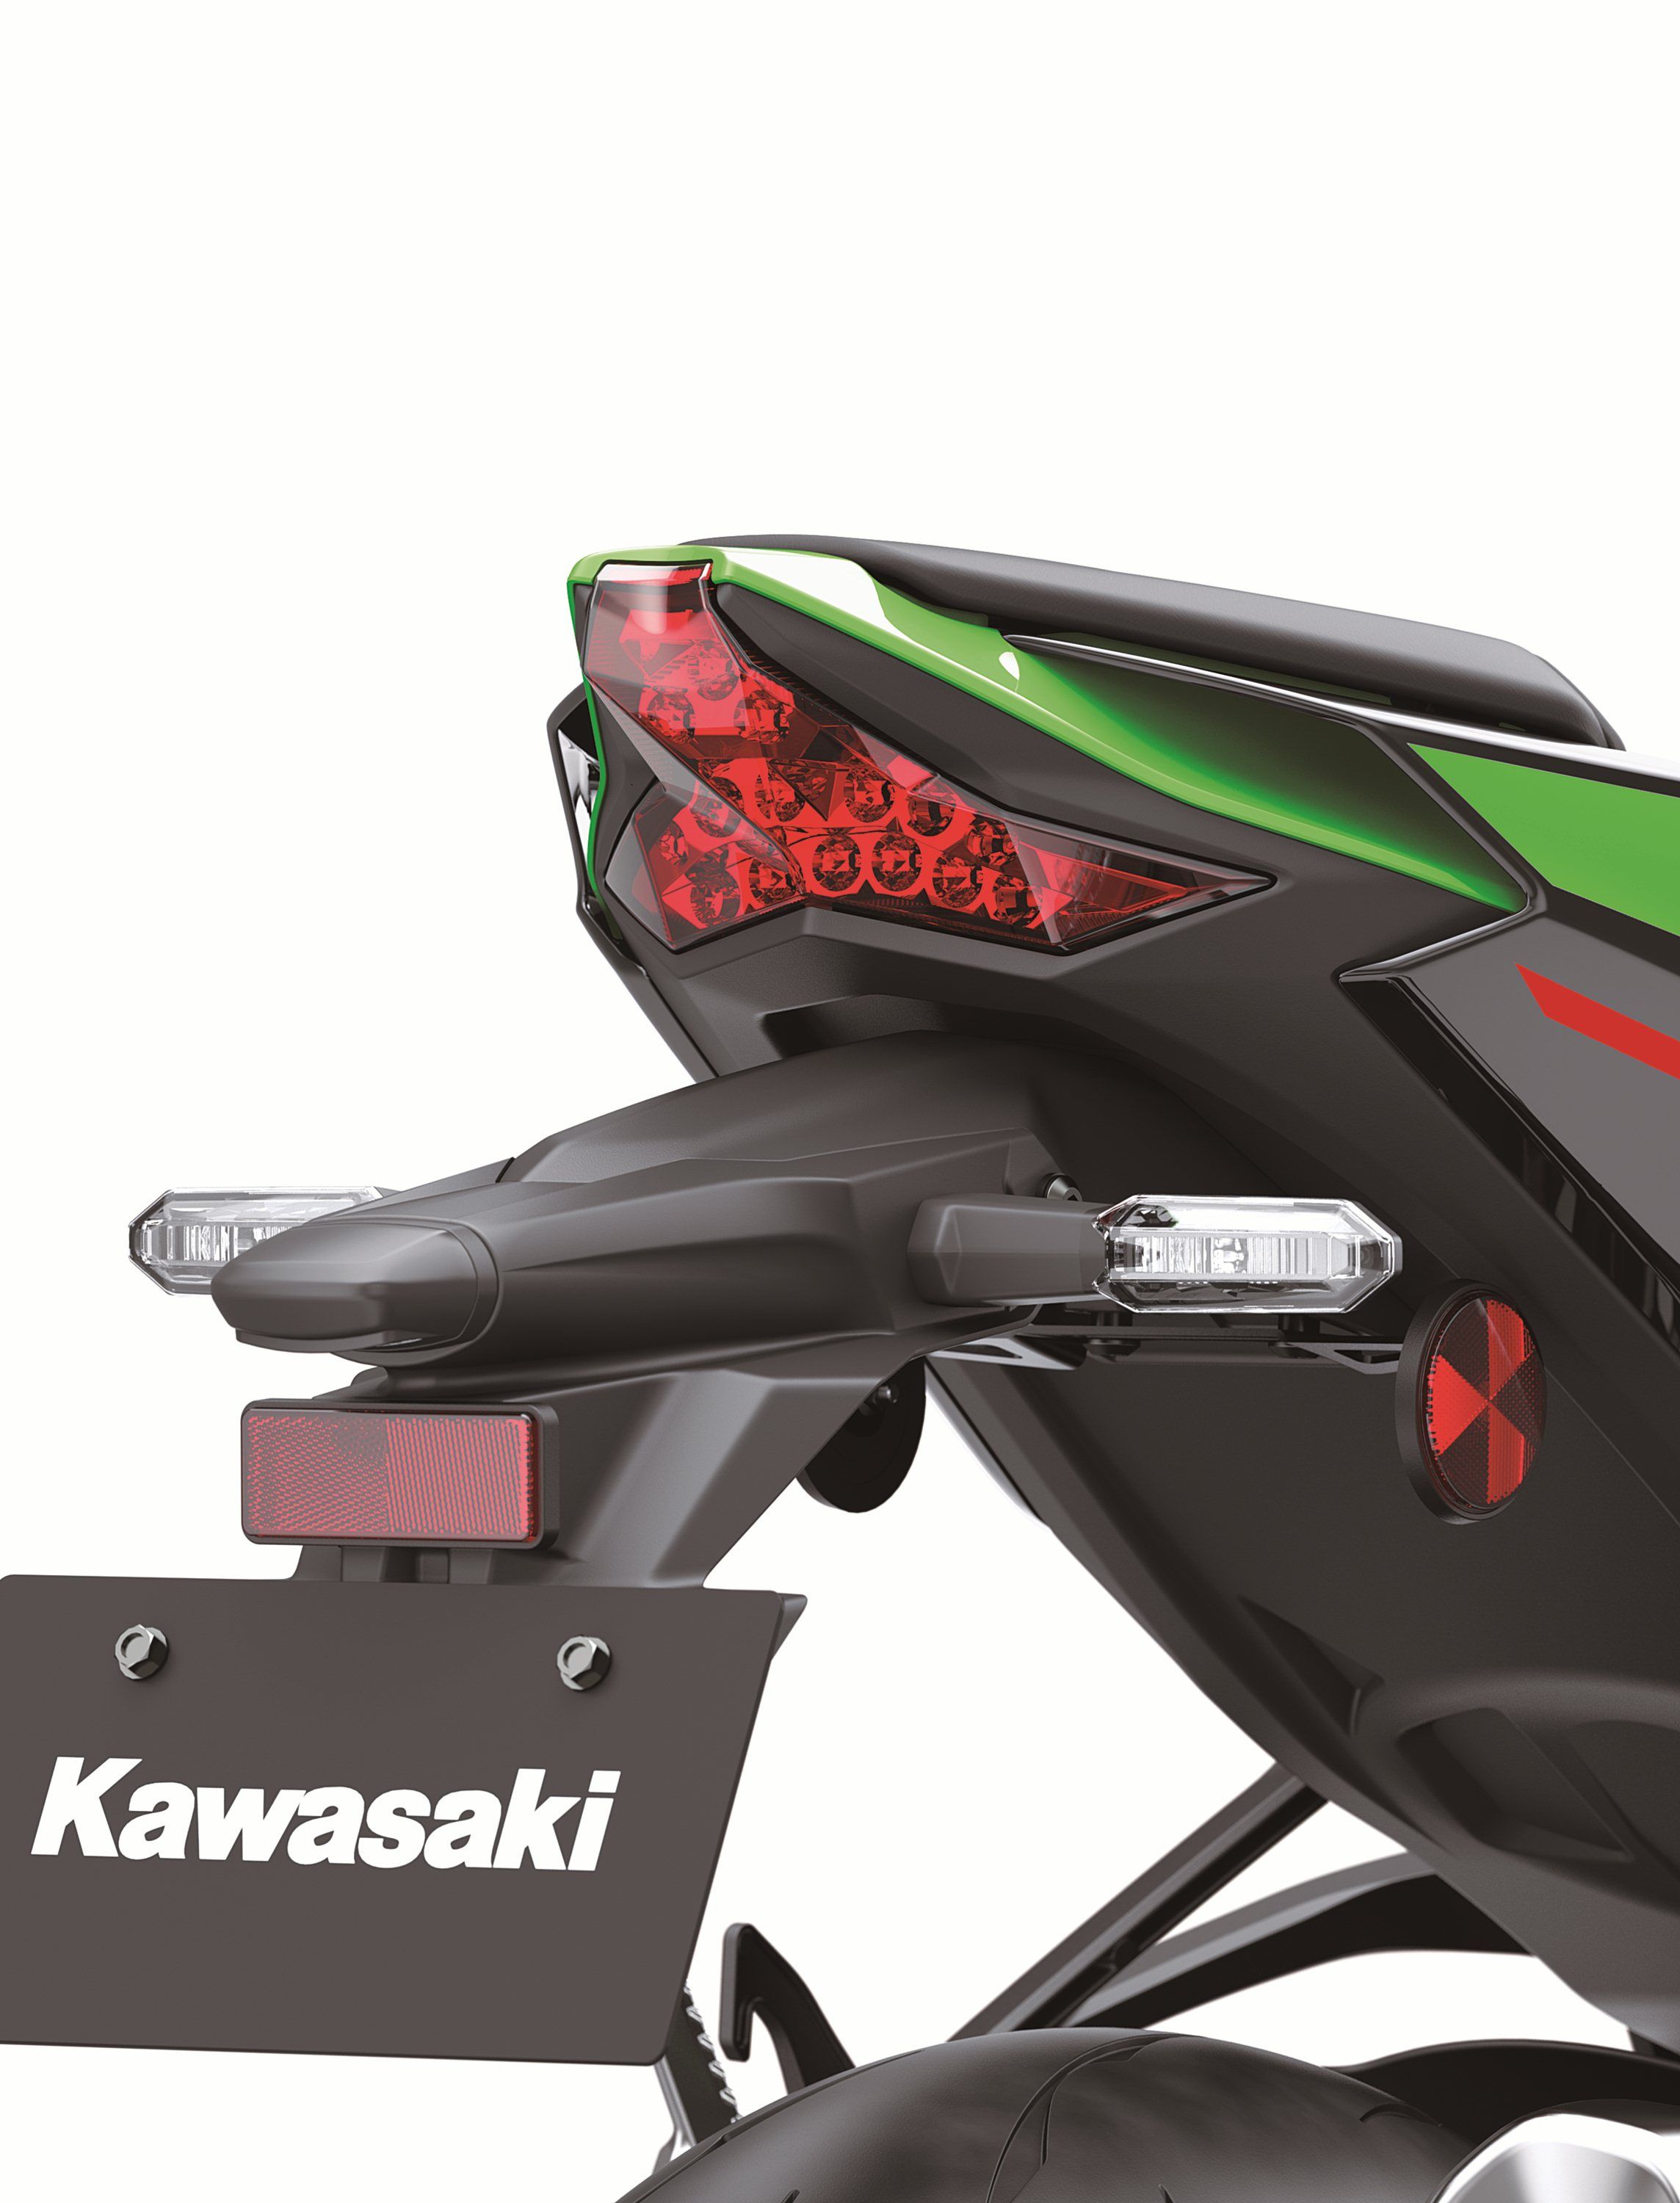 2021 - 2022 Kawasaki Ninja ZX-10R